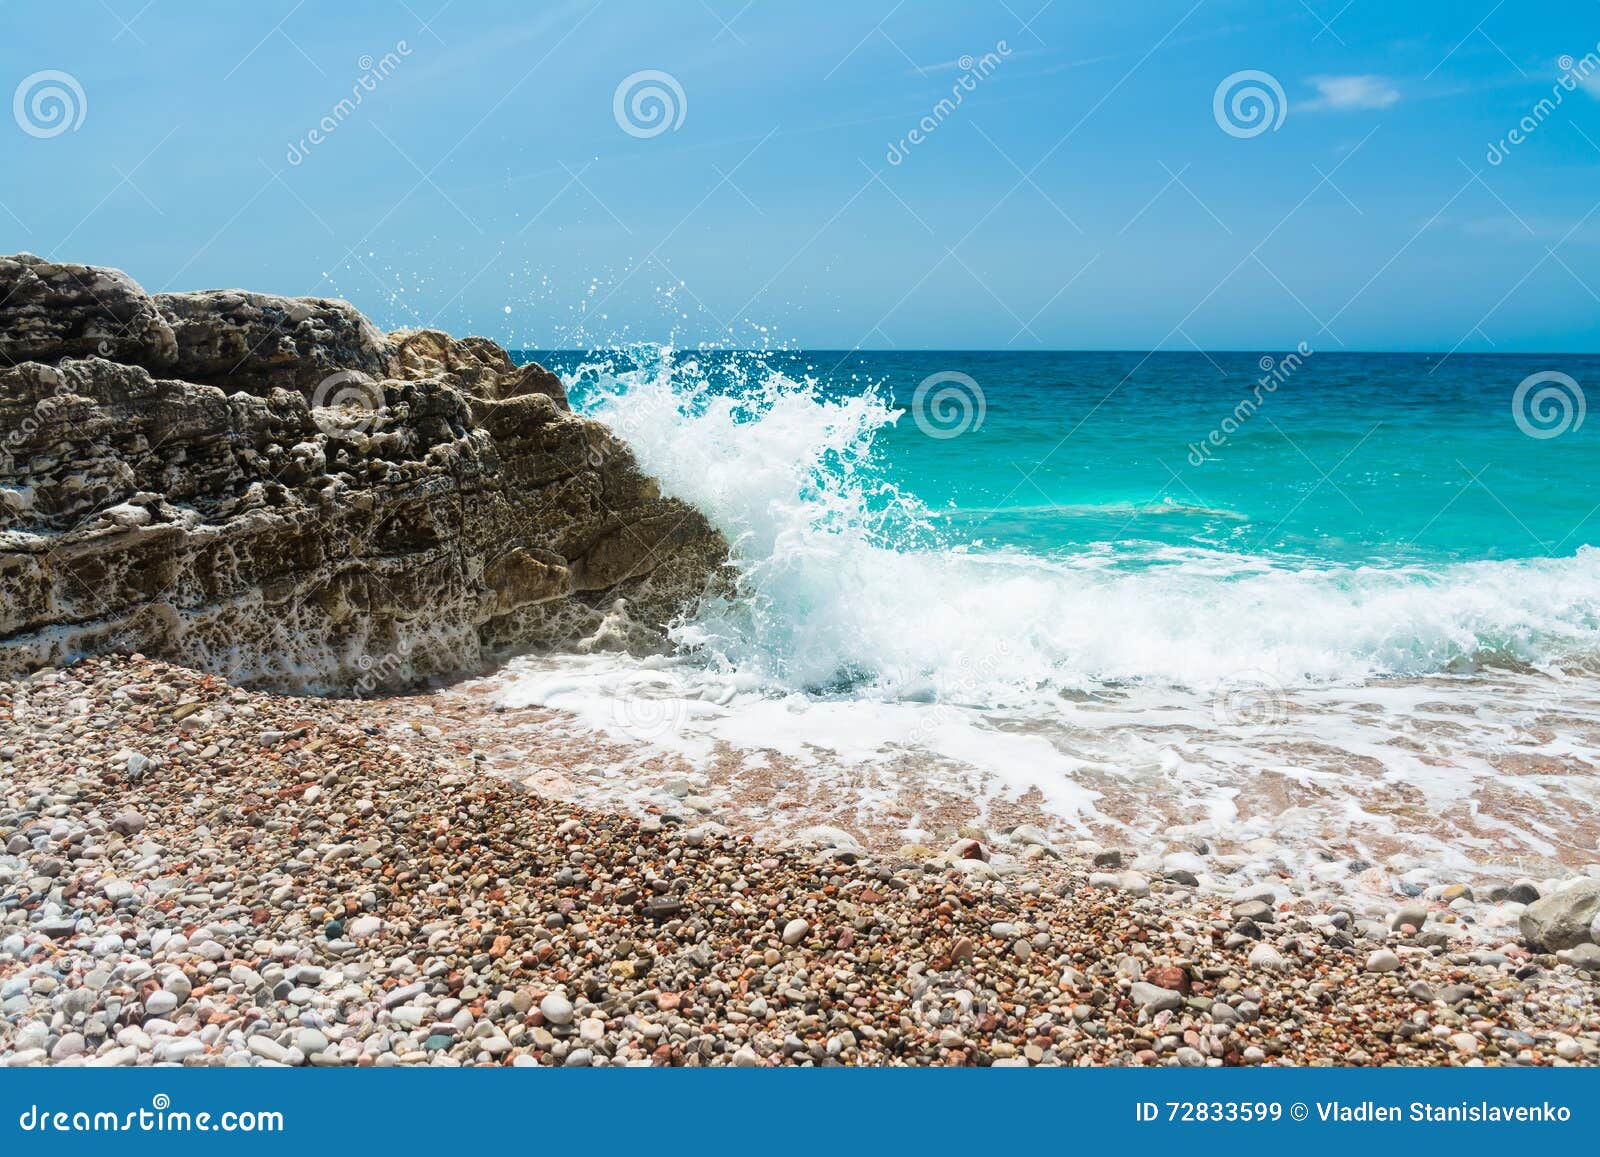 sea swash. waves breaking on the rocks.